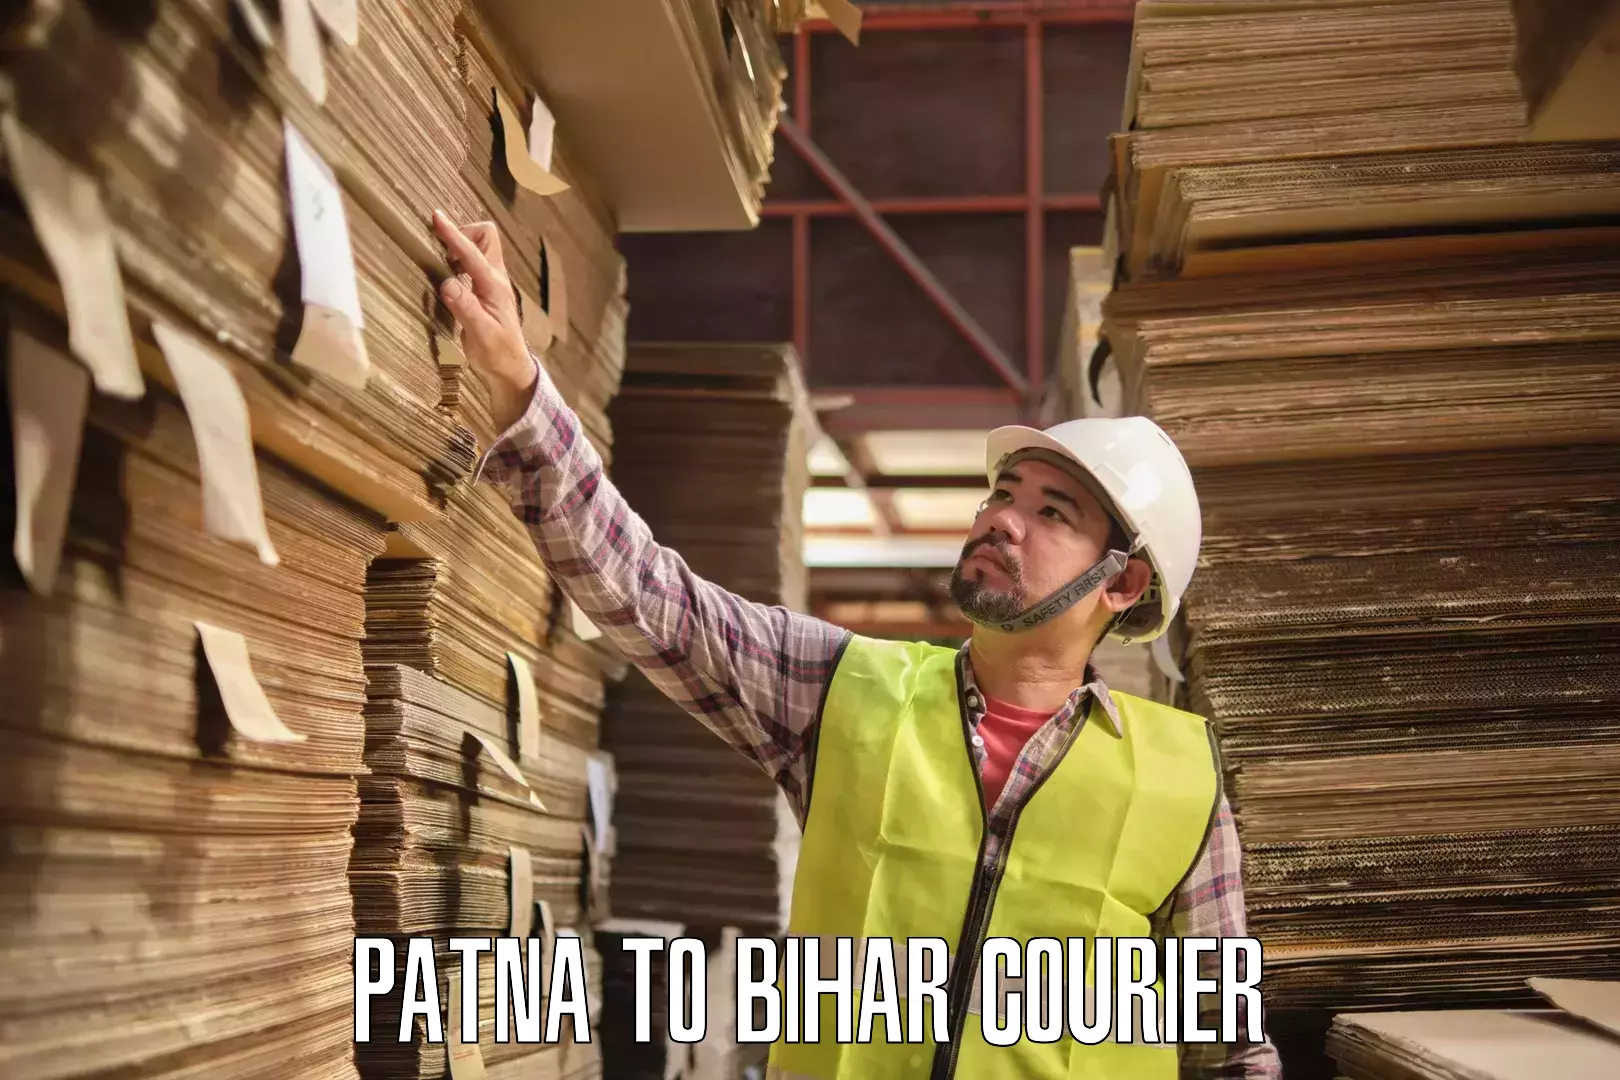 Reliable courier services Patna to Bahadurganj